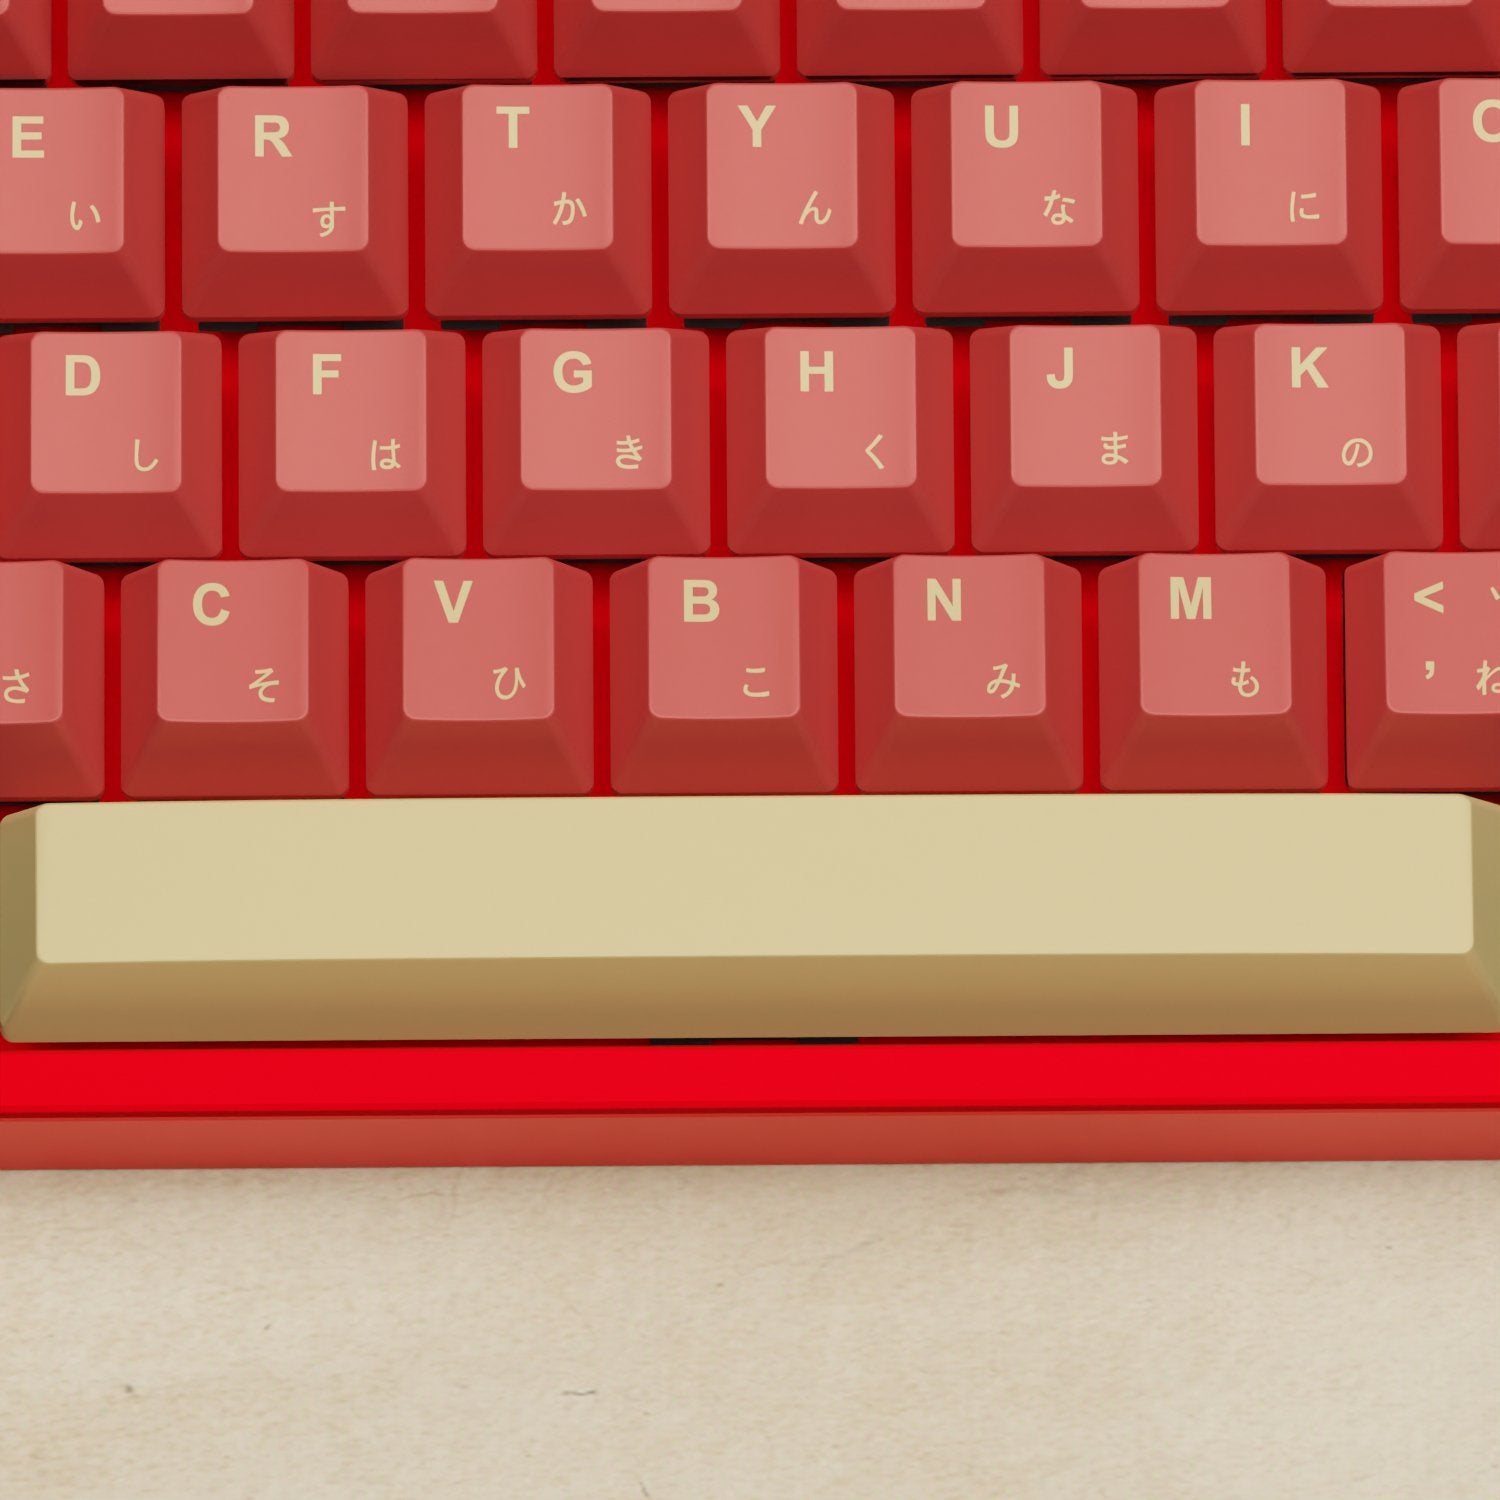 Alpha 108 - 100% Red Samurai Mechanical Keyboard - Goblintechkeys